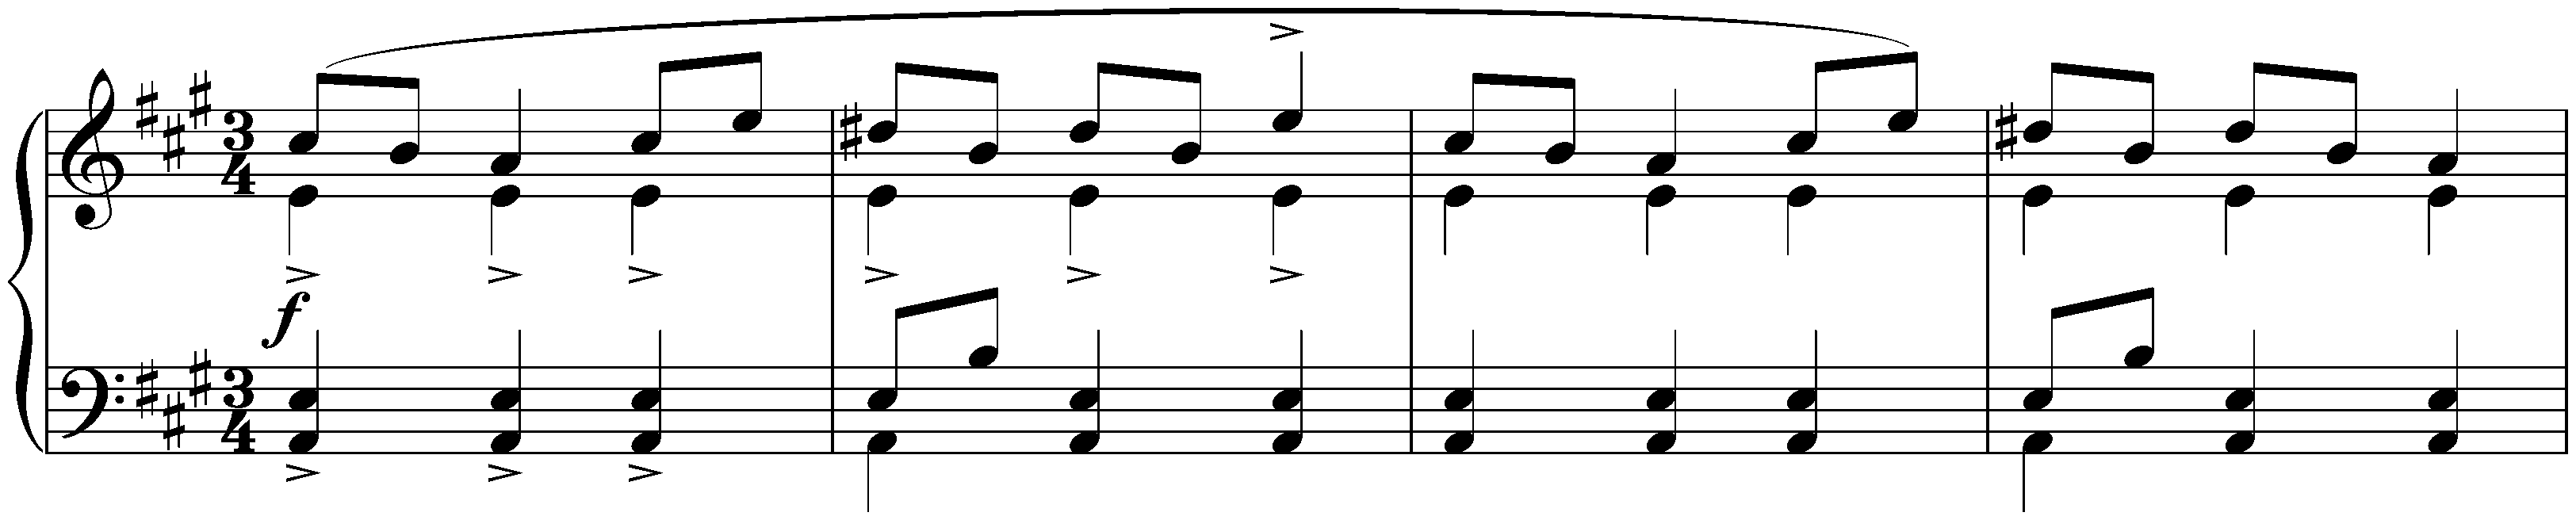 Five Mazurkas, op. 7; 2. A minor (first version)